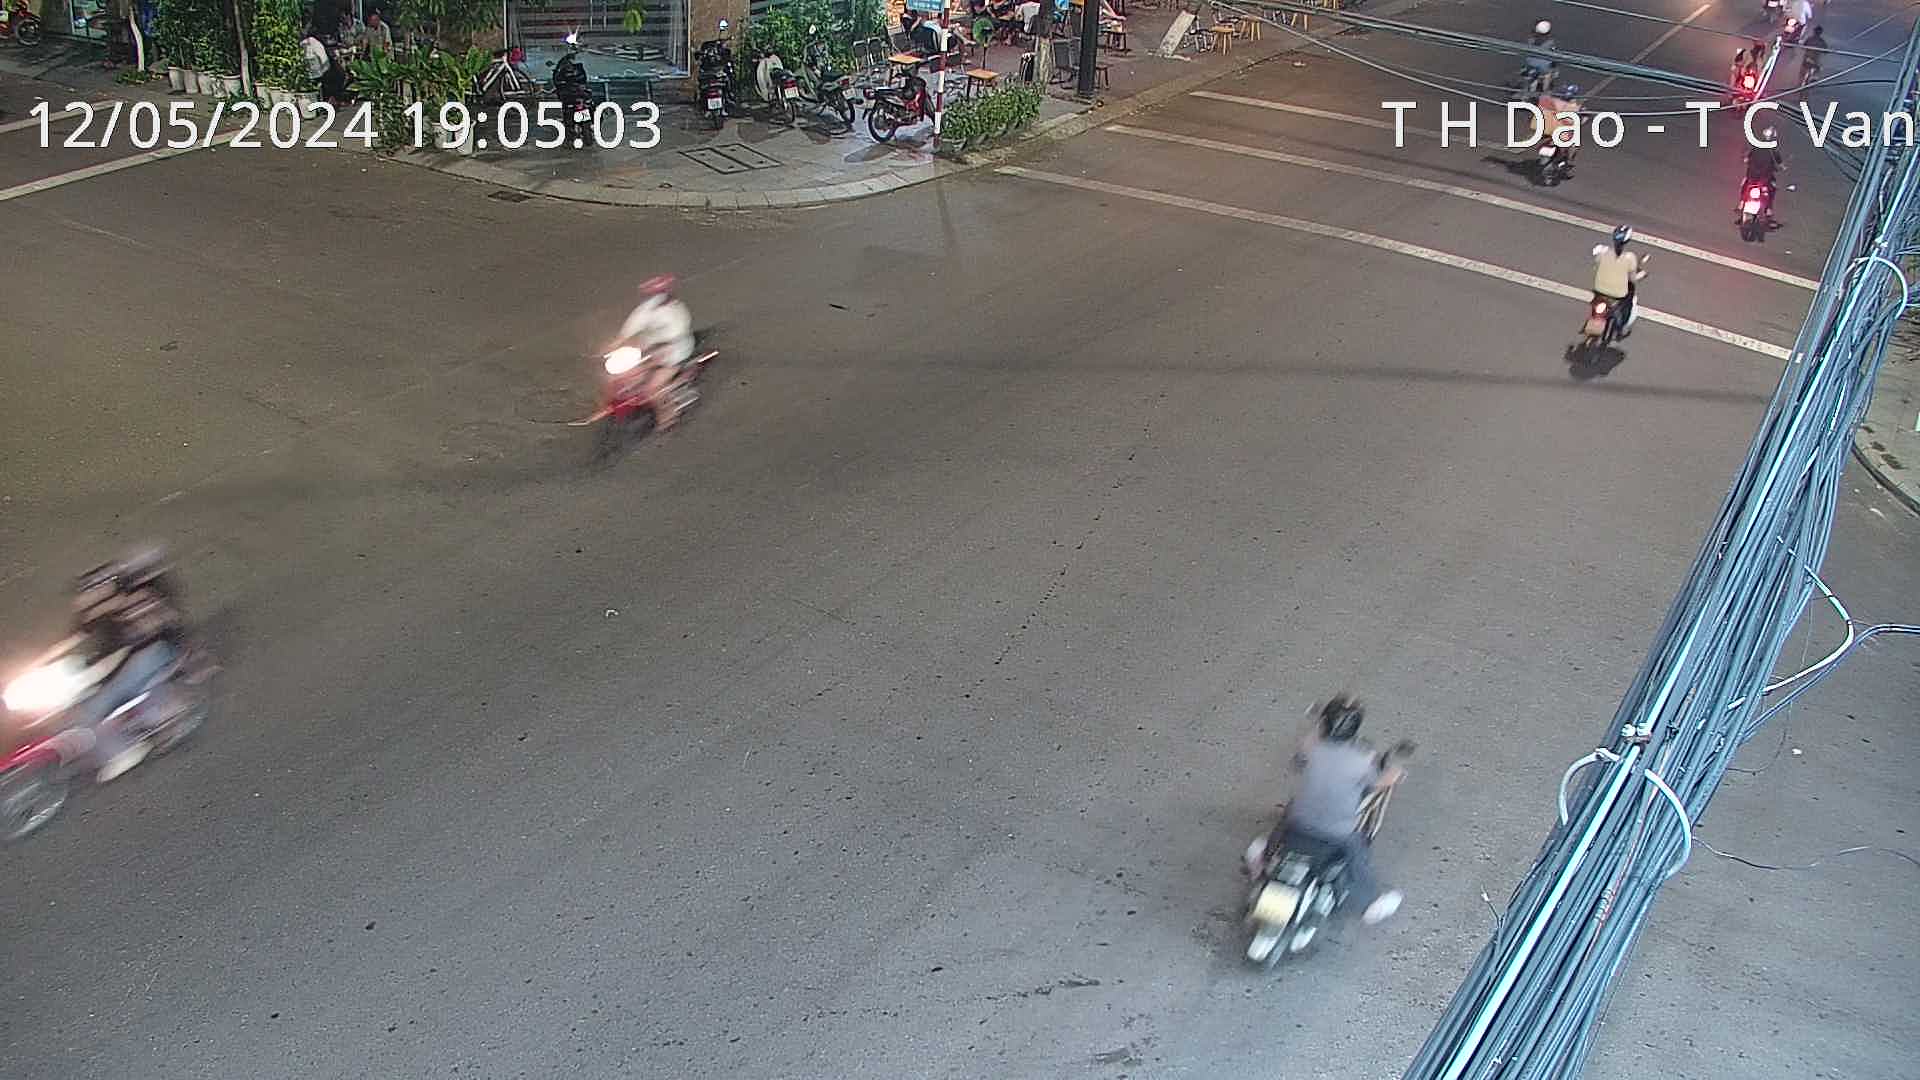 Xem camera giao thông Quy Nhơn Bình Định hình ảnh tuyến đường Ngã 4 Trần Hưng Đạo - Trần Cao Vân 